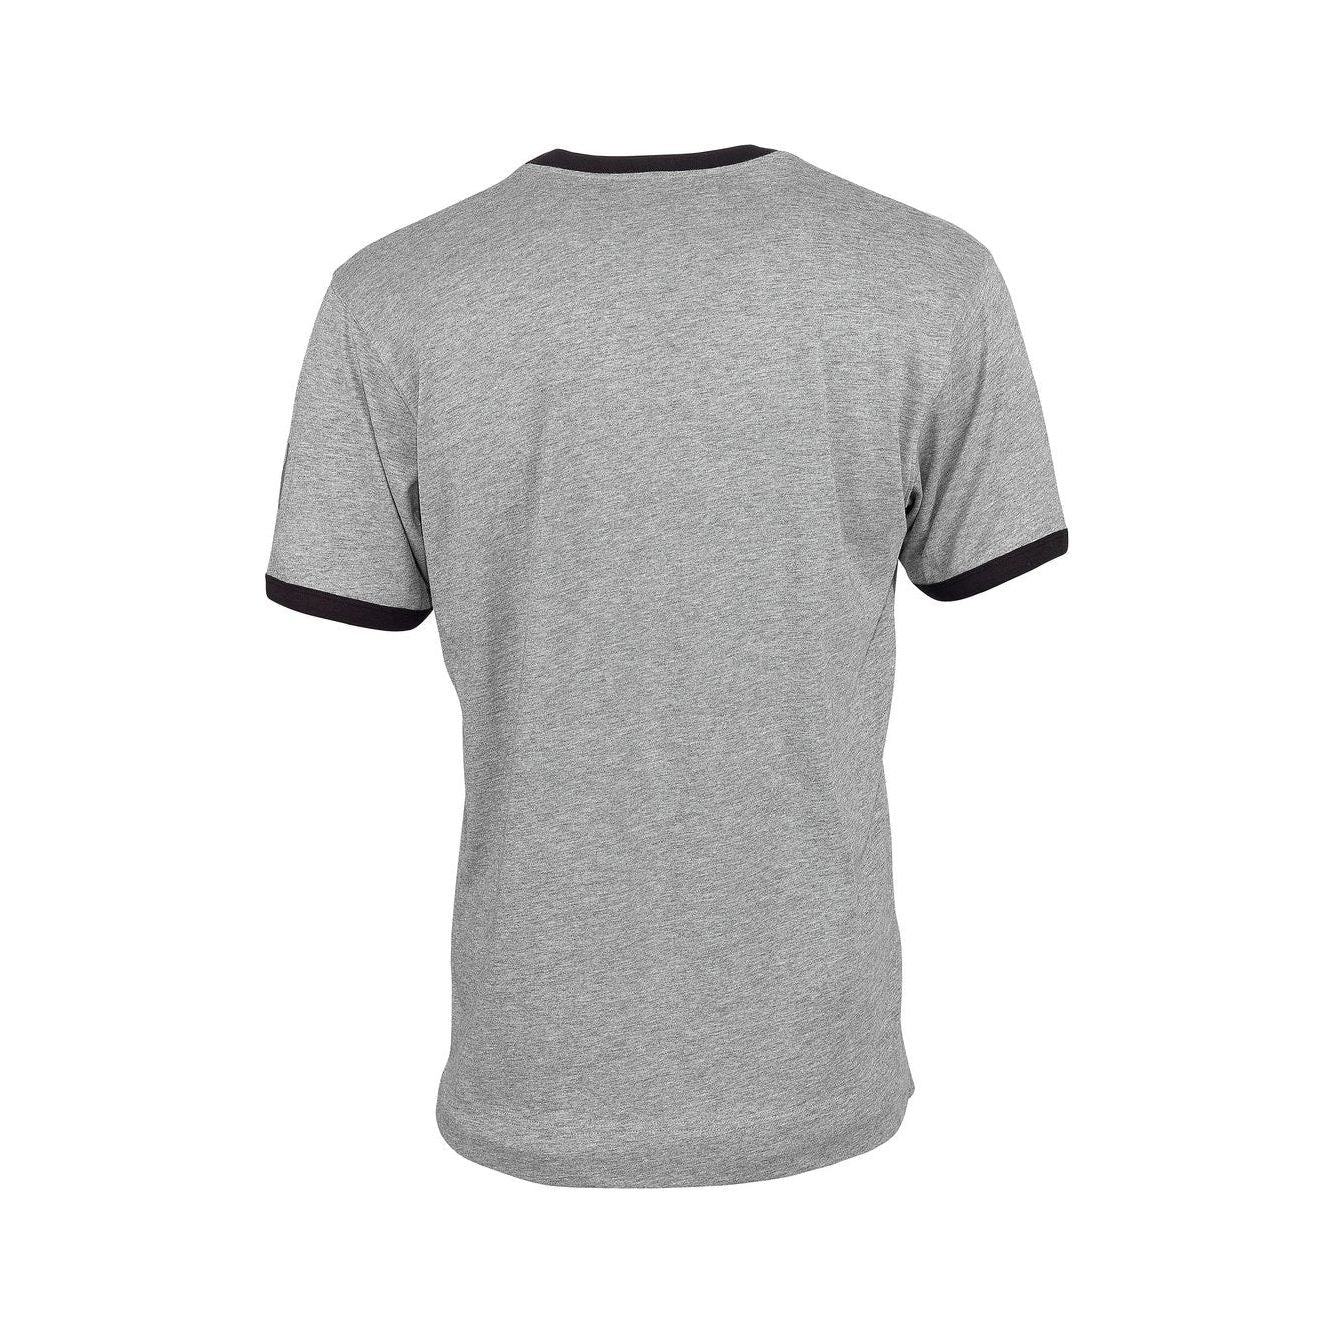 Mascot Algoso T-shirt V-Neck Grey 50415-250-08 Back